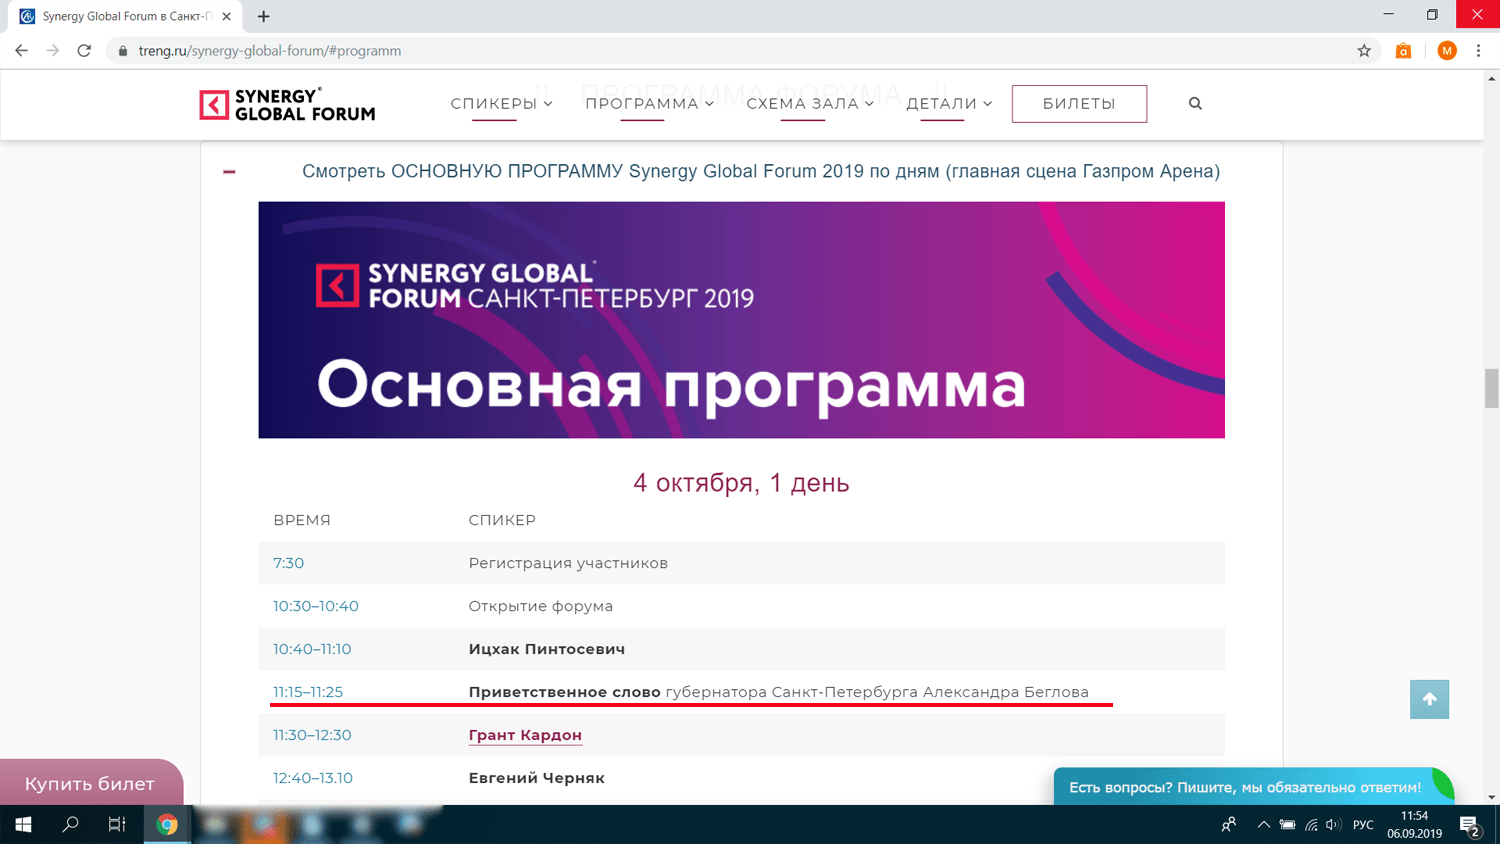 Скриншот с официального сайта Synergy Global Forum